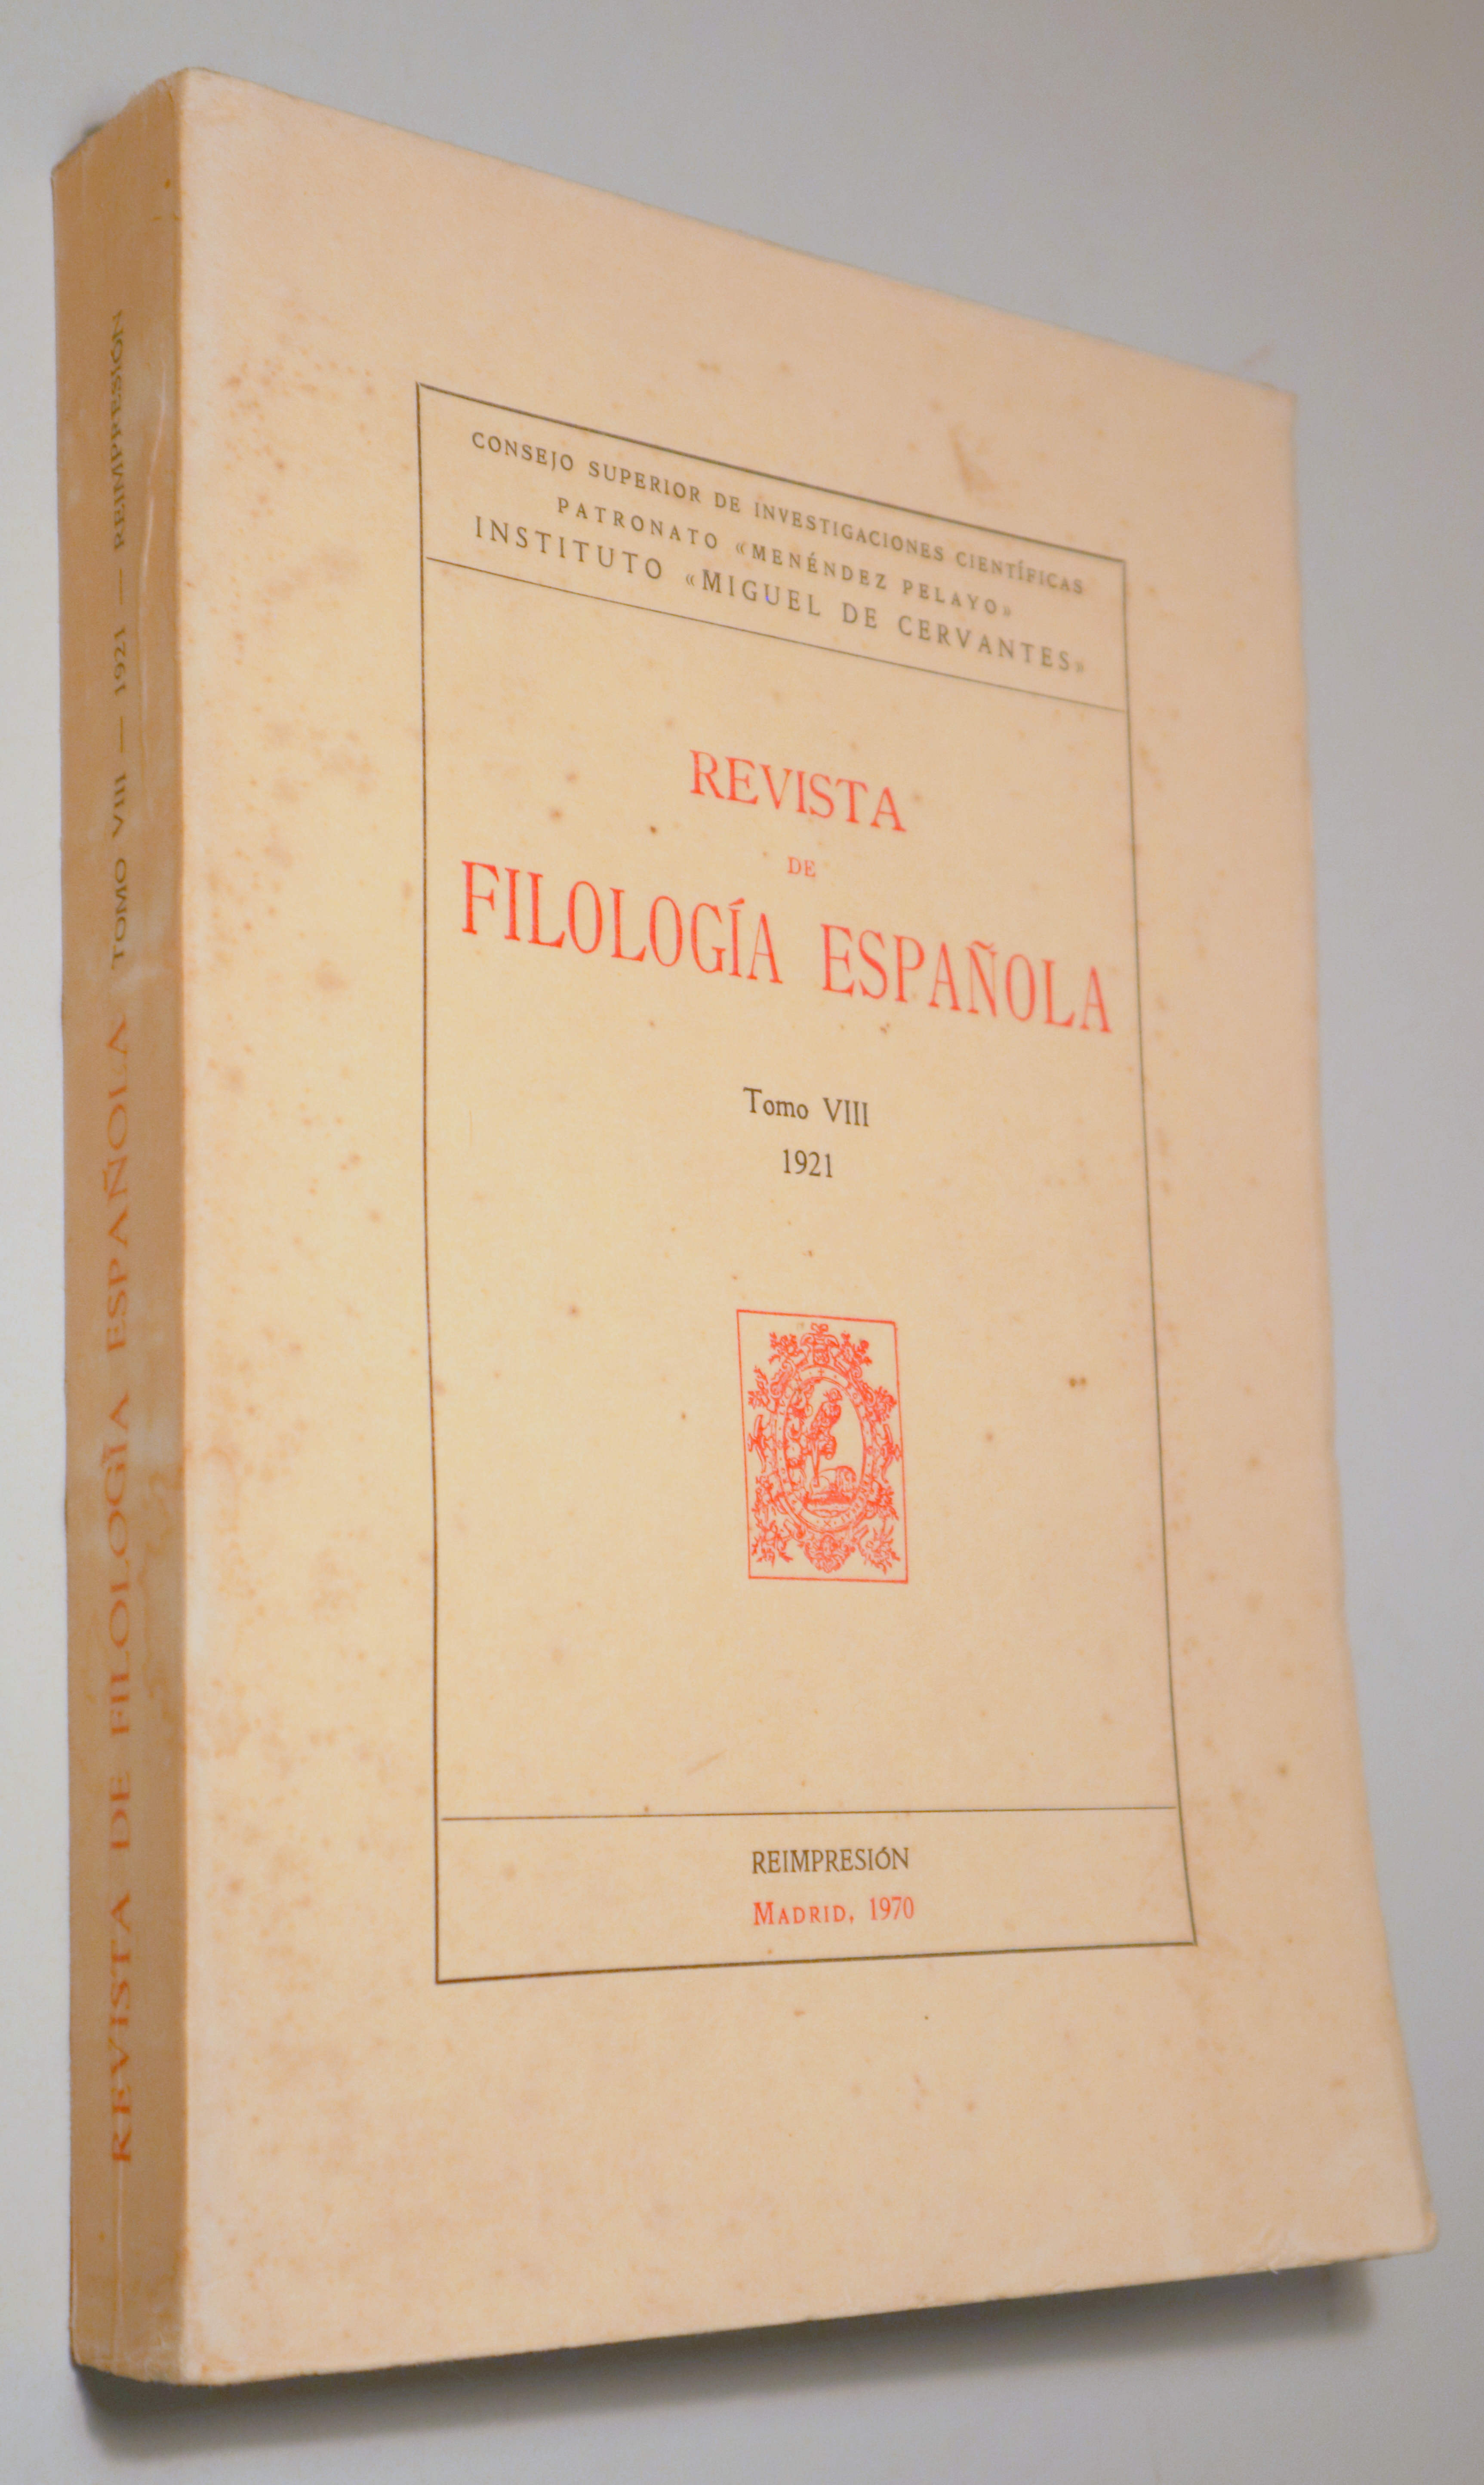 REVISTA DE FILOLOGÍA ESPAÑOLA. Tomo VIII 1921 - Madrid 1970 - Reimpresión